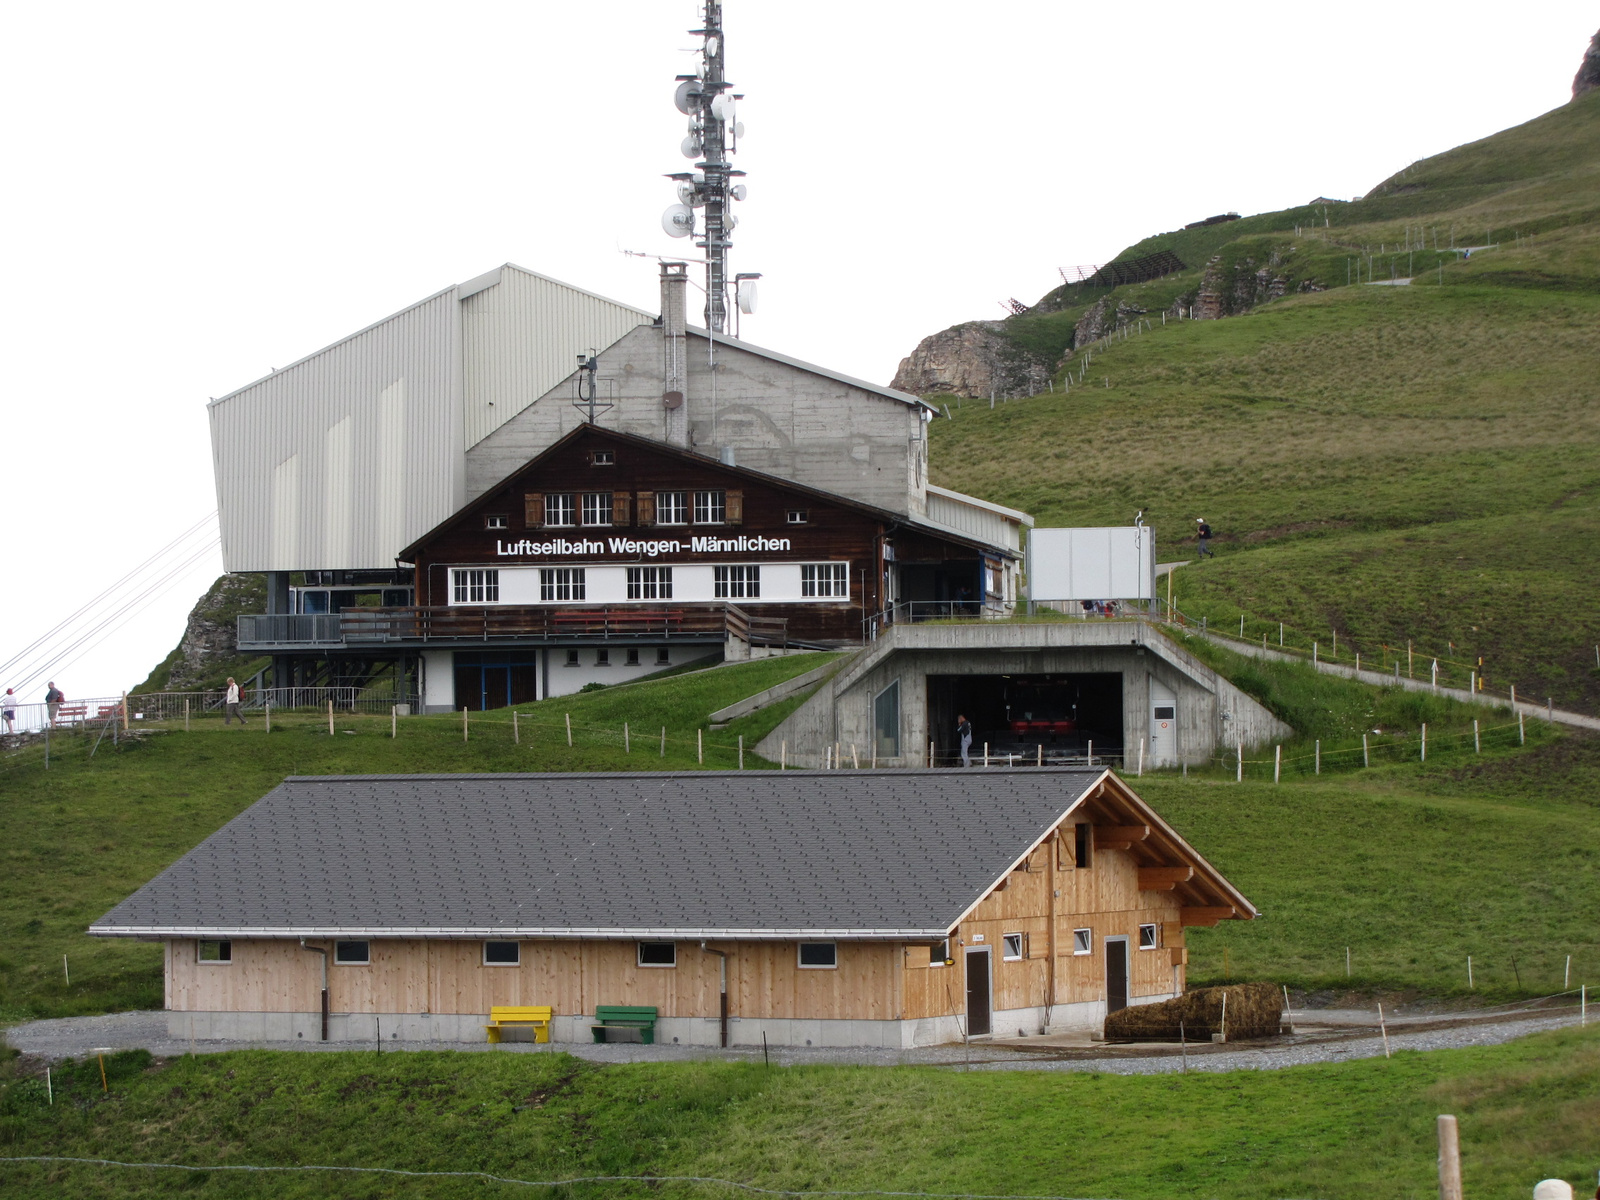 Svájc, Jungfrau Region, Luftseilbahn Wengen-Männlichen, SzG3